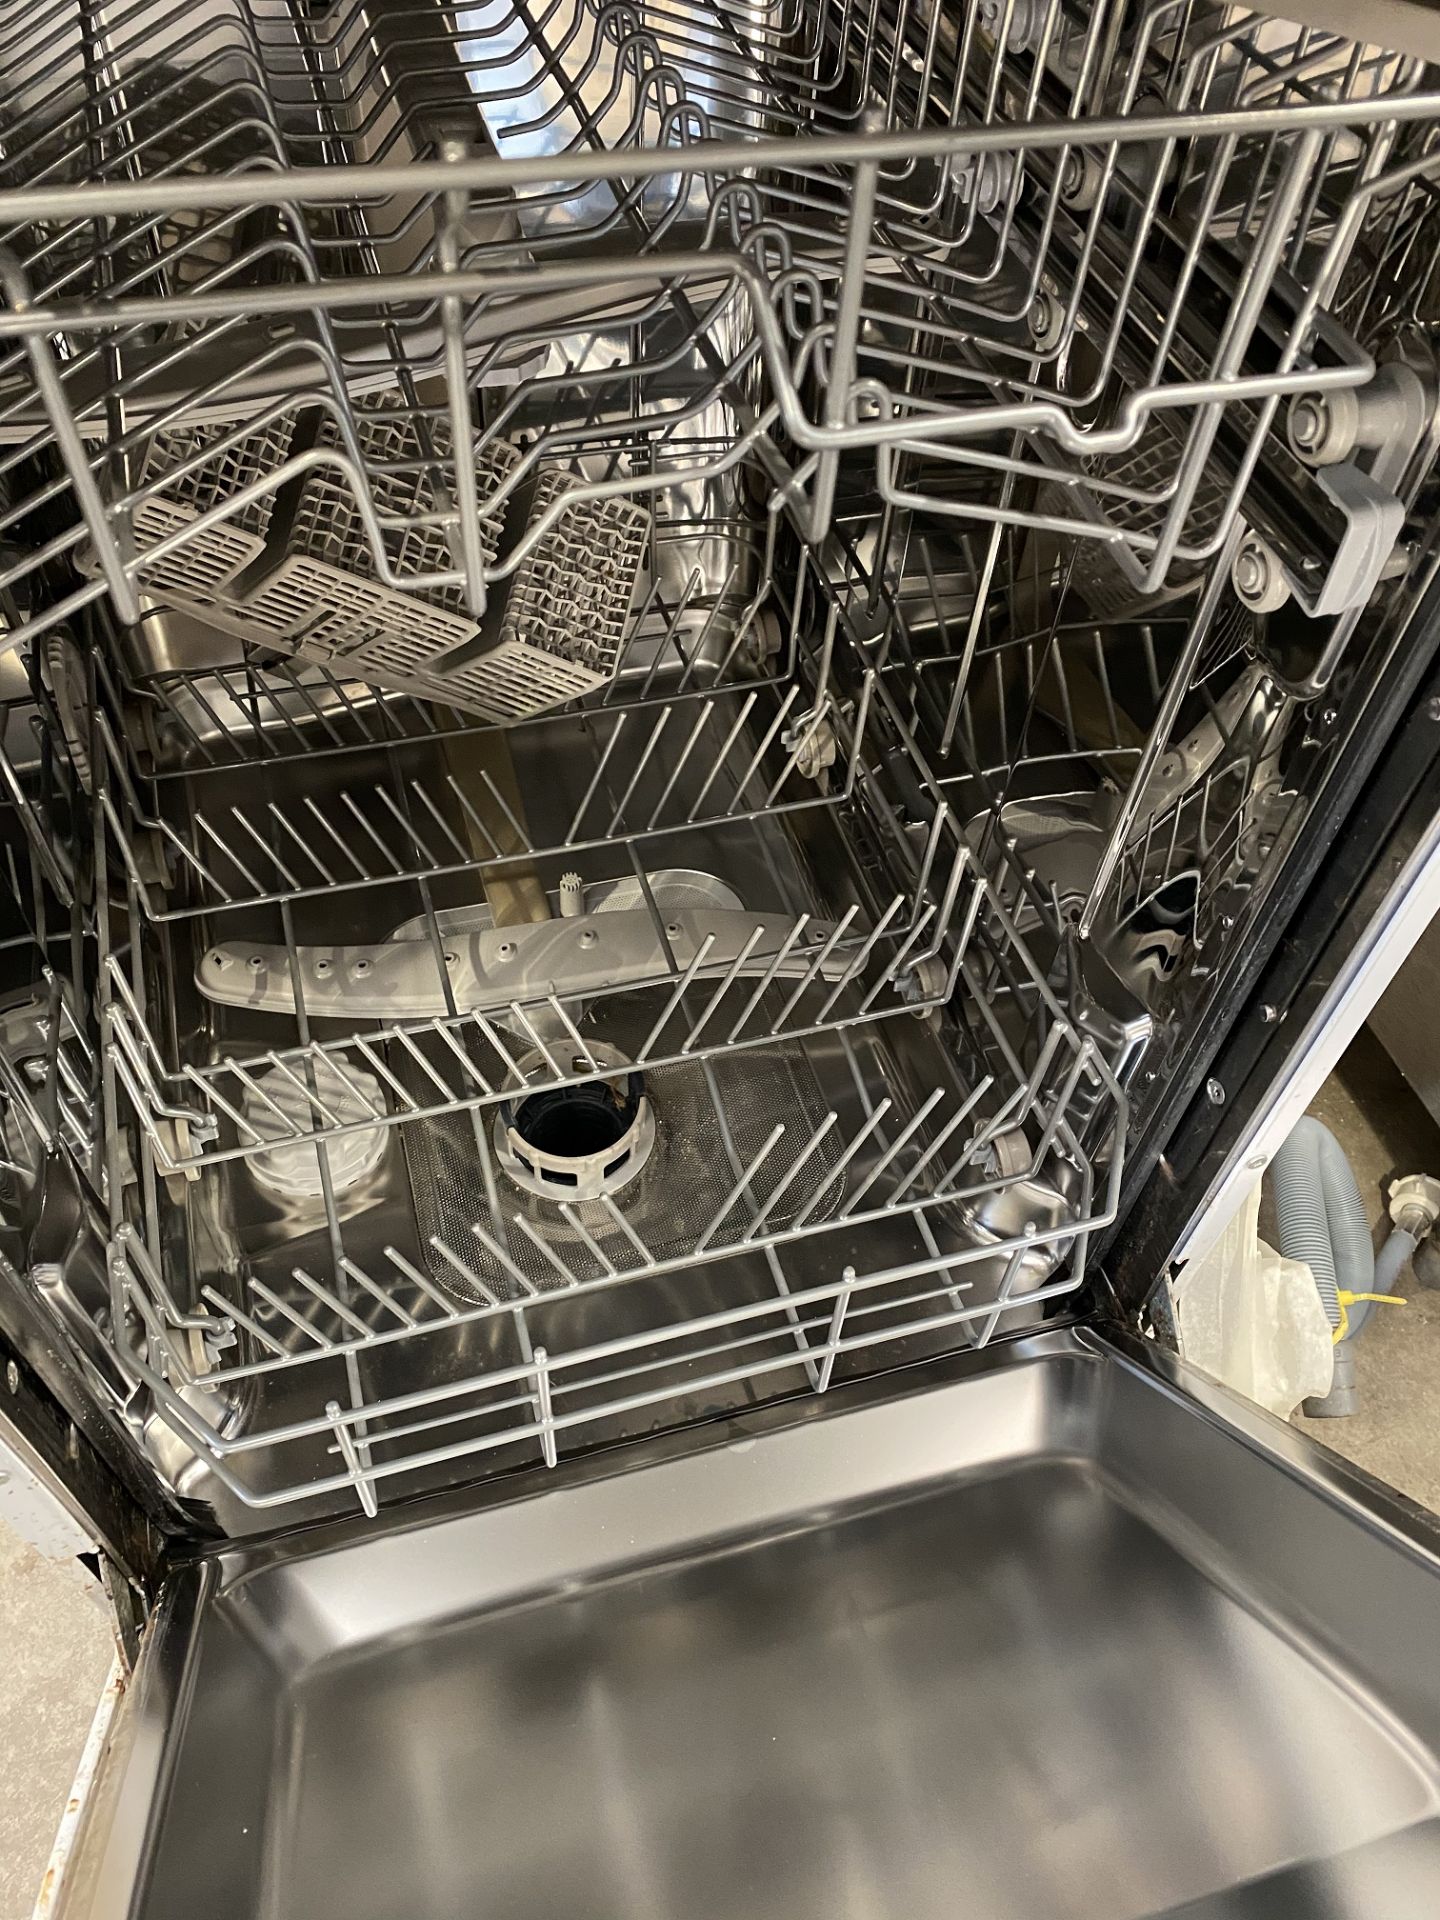 Hotpoint Domestic Slimline Dishwasher - Image 2 of 2